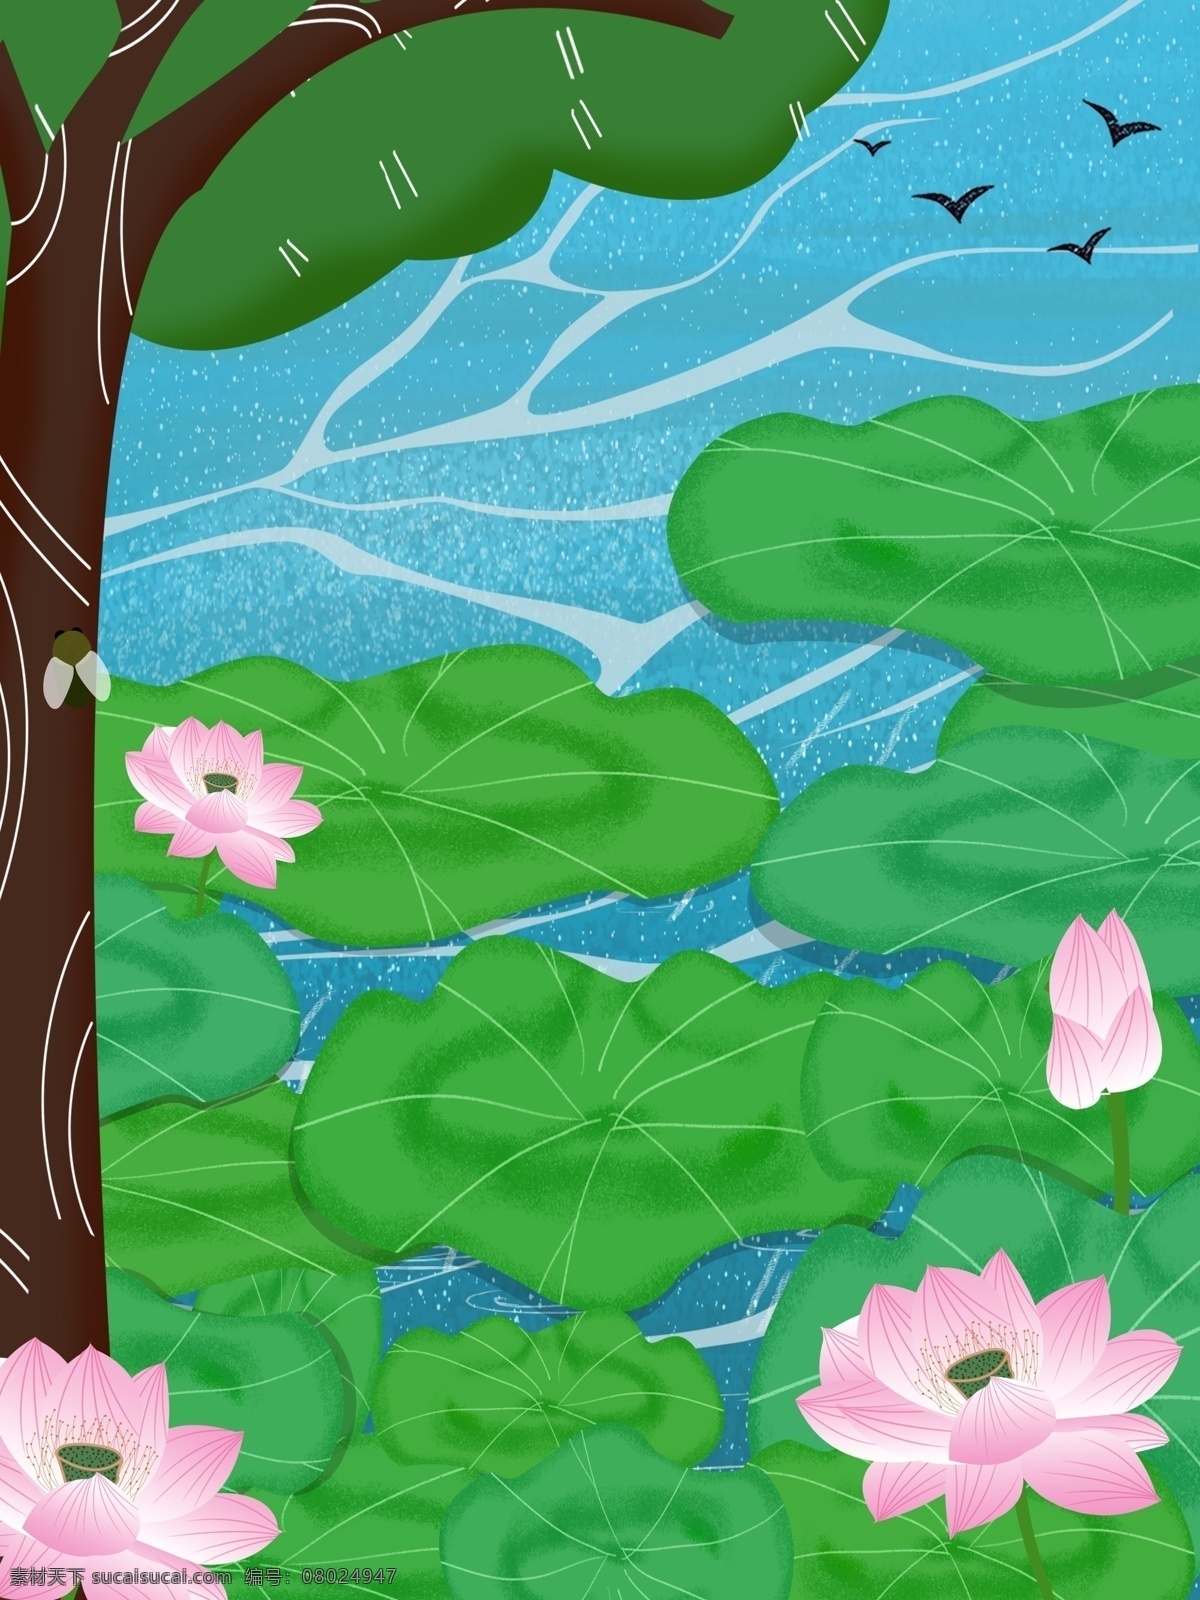 夏日 清新 荷叶 池塘 背景 绿色 荷花 卡通 彩色 创意 装饰 设计背景 海报背景 简约 图案 背景素材